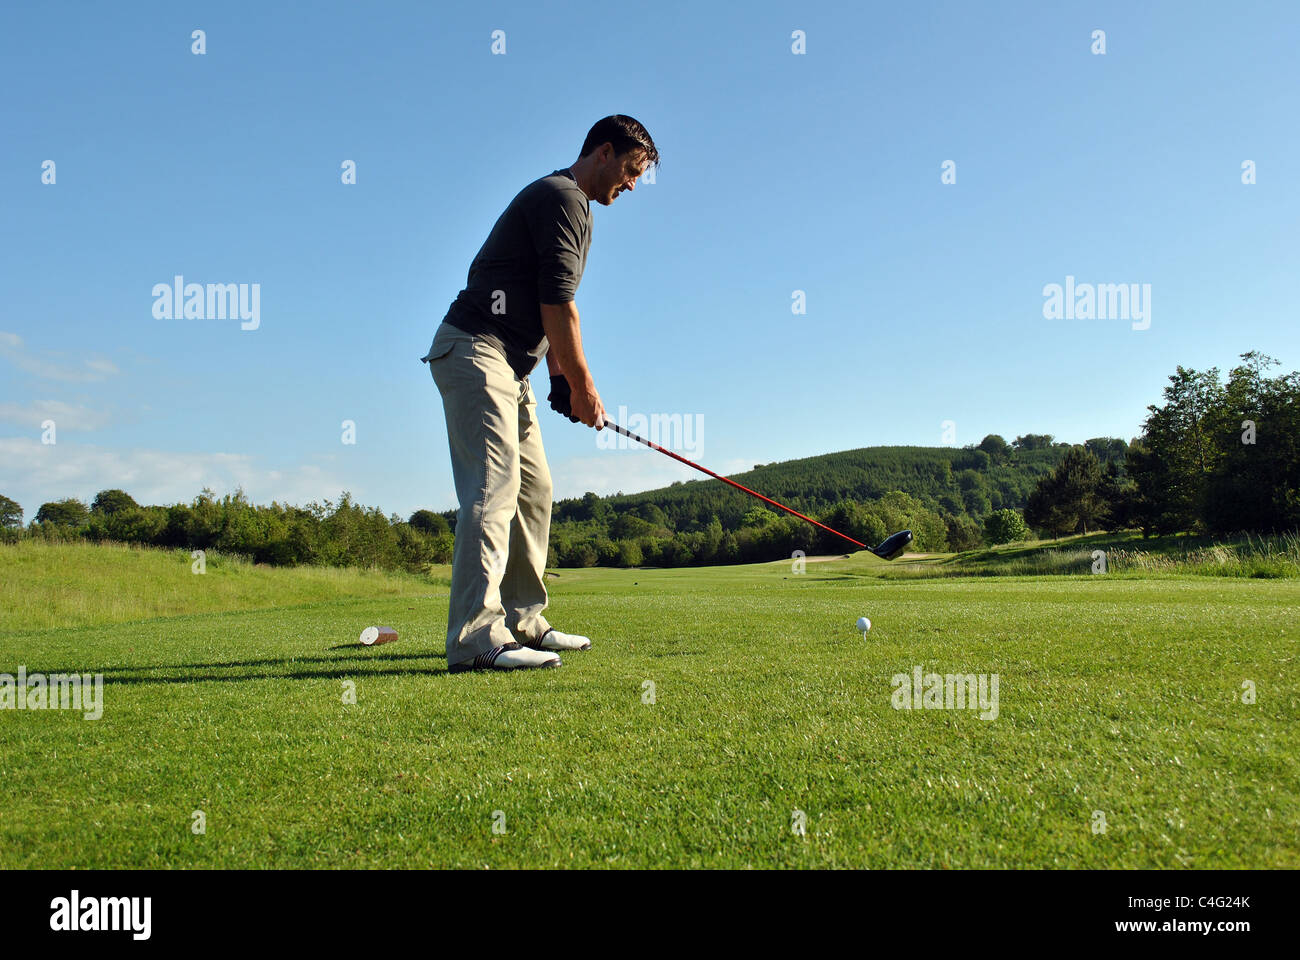 taking a golf shot Stock Photo